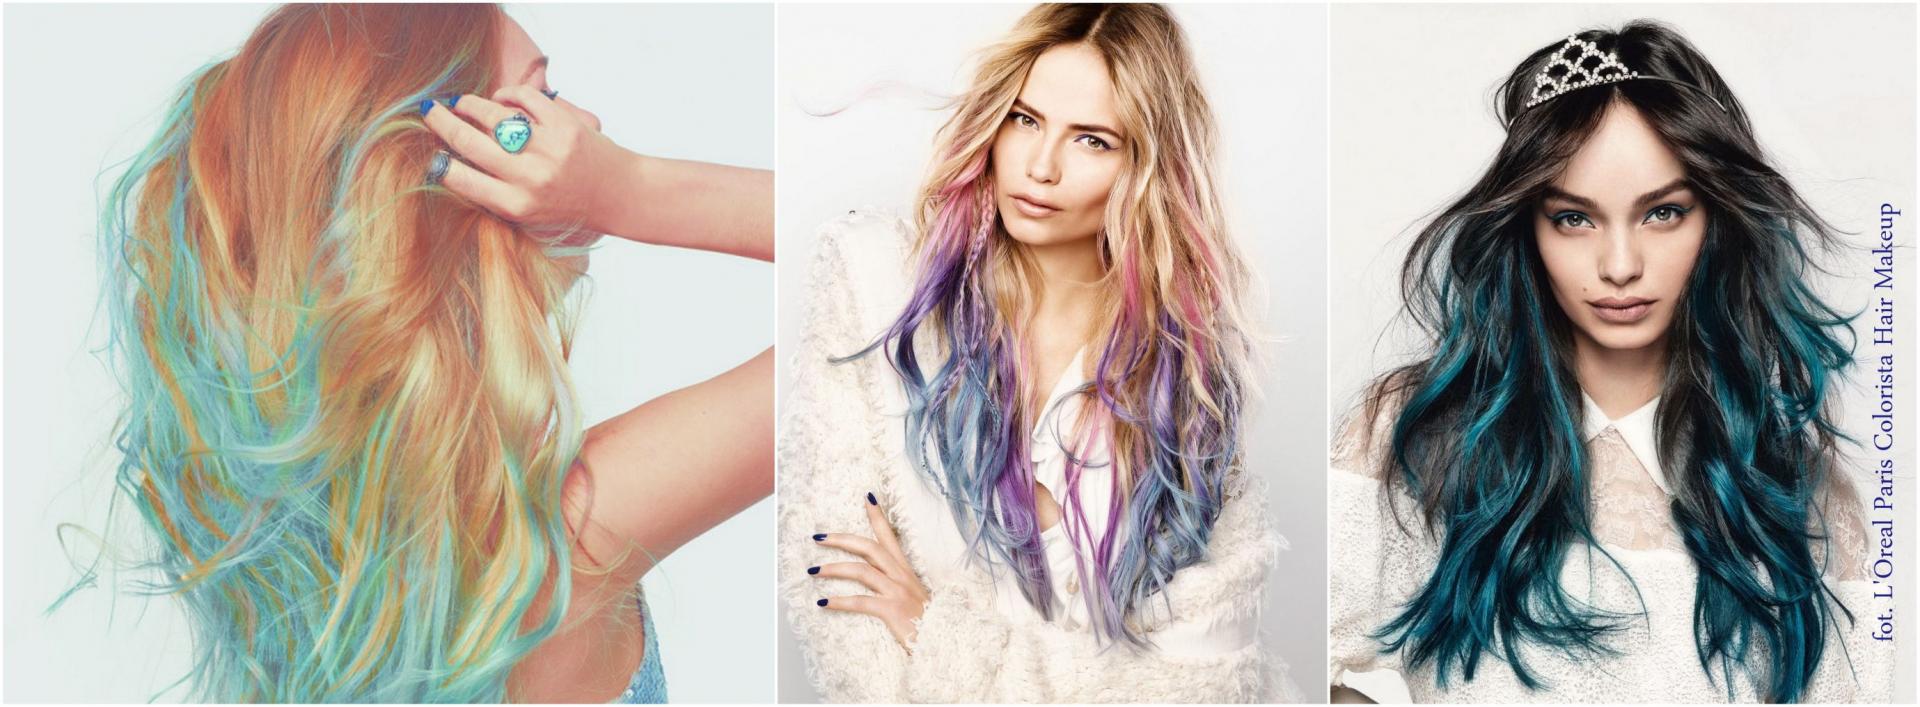 Sztosik kolor – włosy w odcieniach pastel i fluo zdominowały social media